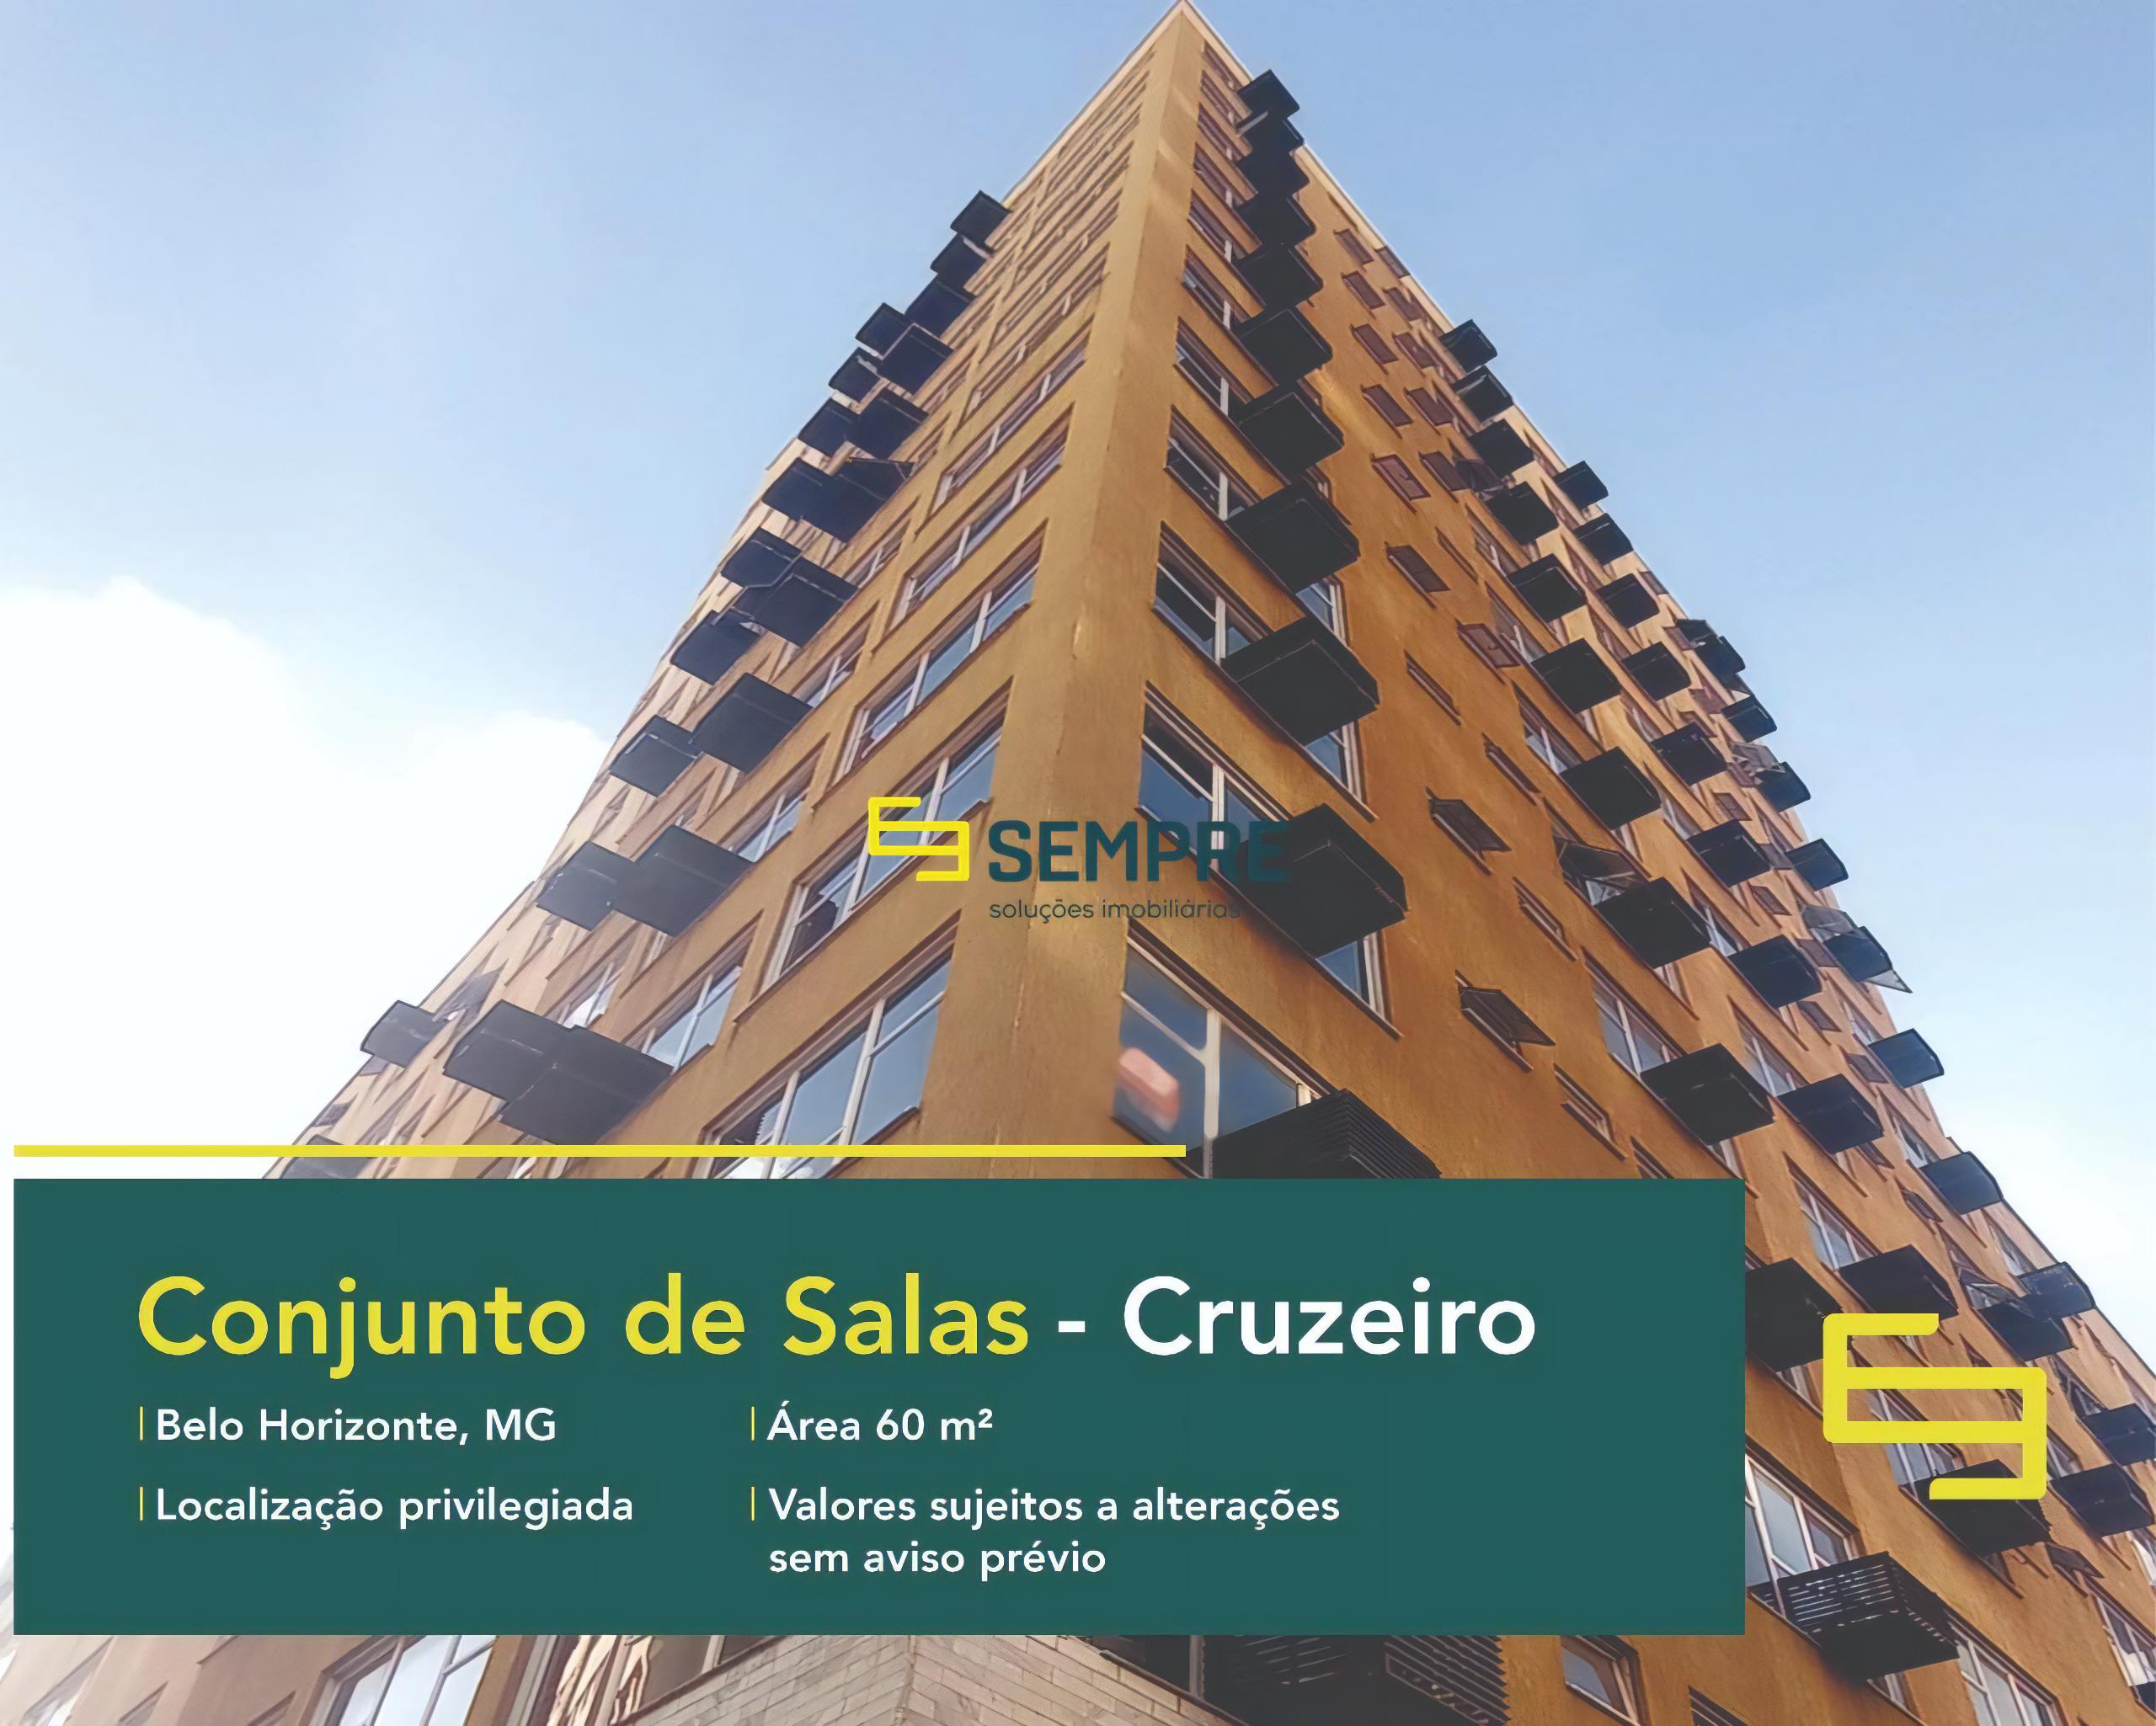 Conjunto de salas comerciais no Cruzeiro para venda em Belo Horizonte, excelente localização. O ponto comercial conta com área de 60 m².